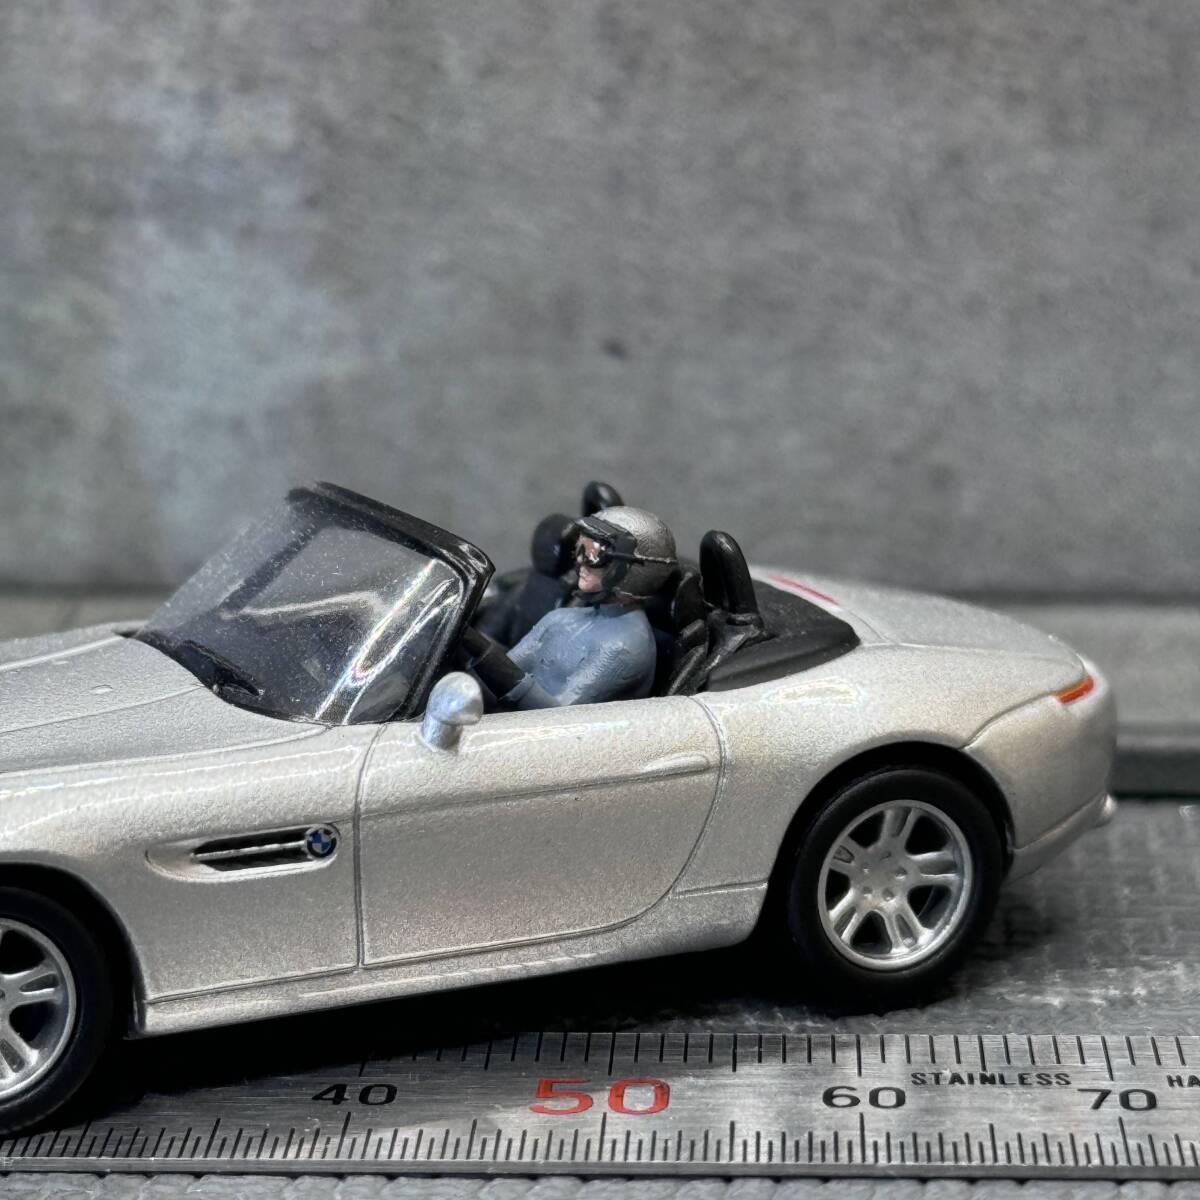 【CJ-662】1/64 スケール 自動車を運転する男性 フィギュア ミニチュア ジオラマ ミニカー トミカの画像1